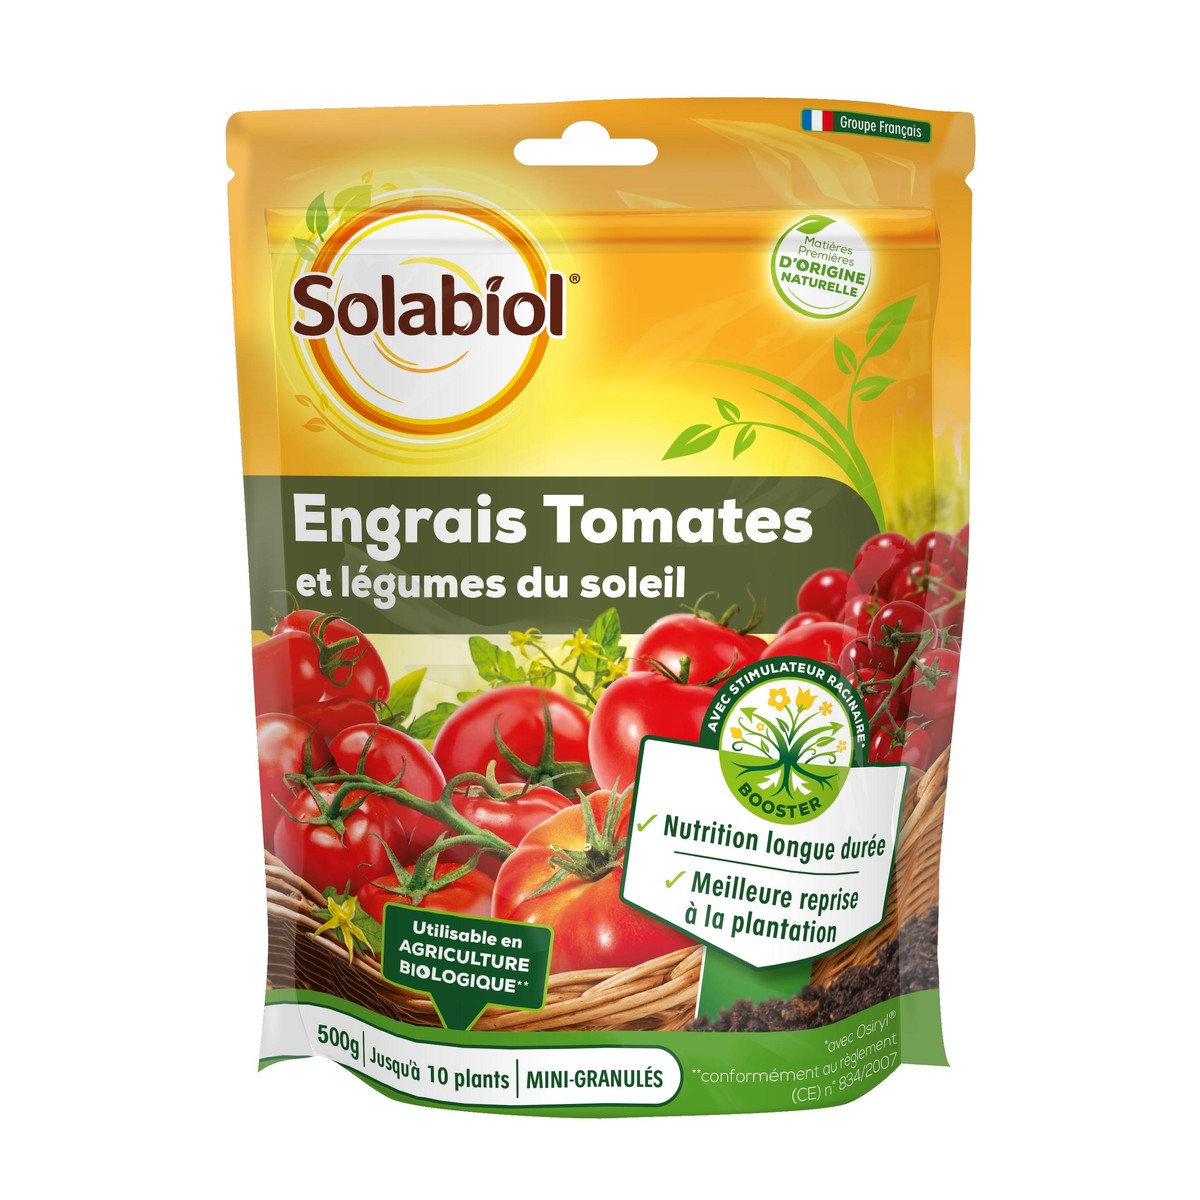   Engrais Tomates Et Legumes Fruits 500g  